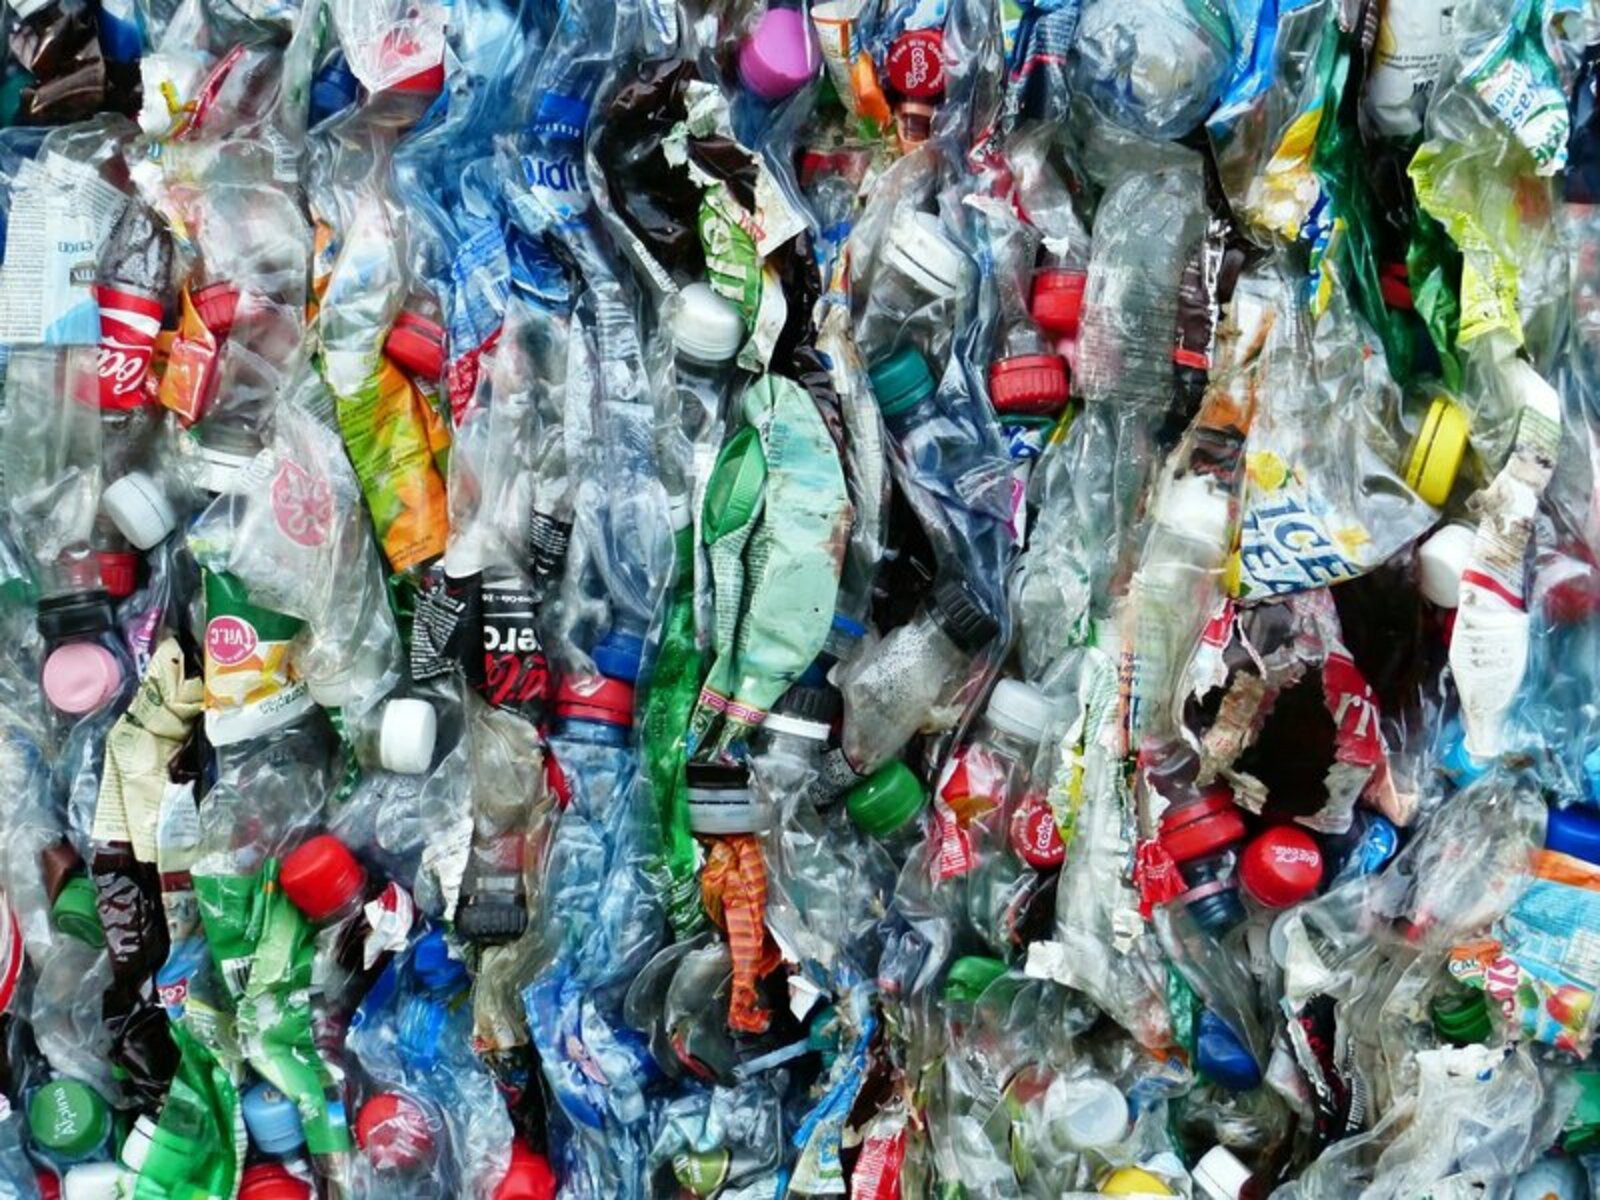 Жителям одного из городов Башкирии предложили сдавать пластиковые бутылки и алюминиевые банки и получать бонусы